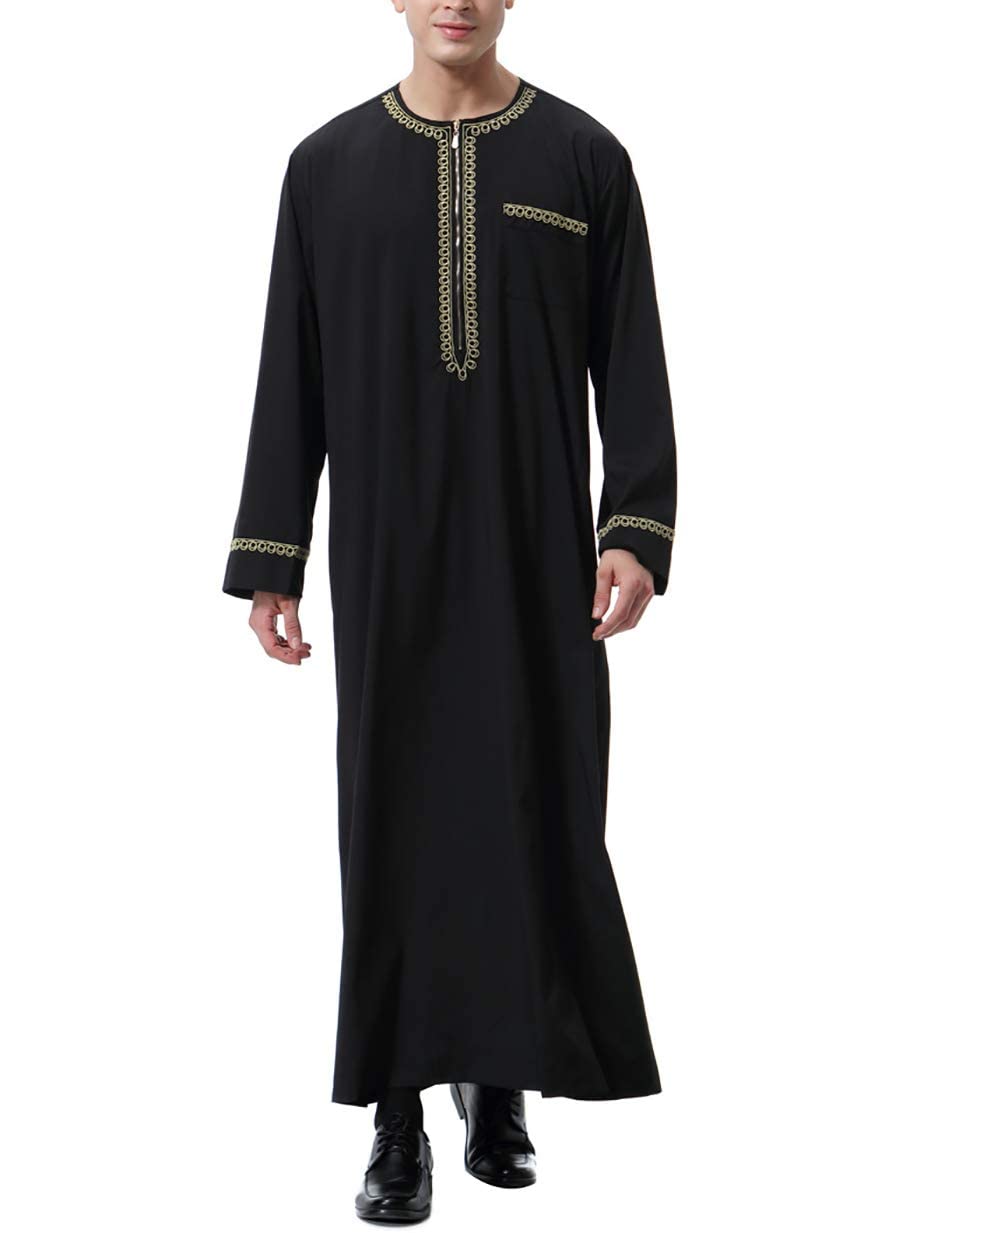 KRUIHAN Abito Musulmano da Uomo Abito Arabo per Abito da Uomo Manica Lunga Islamico Caftano Abaya XL